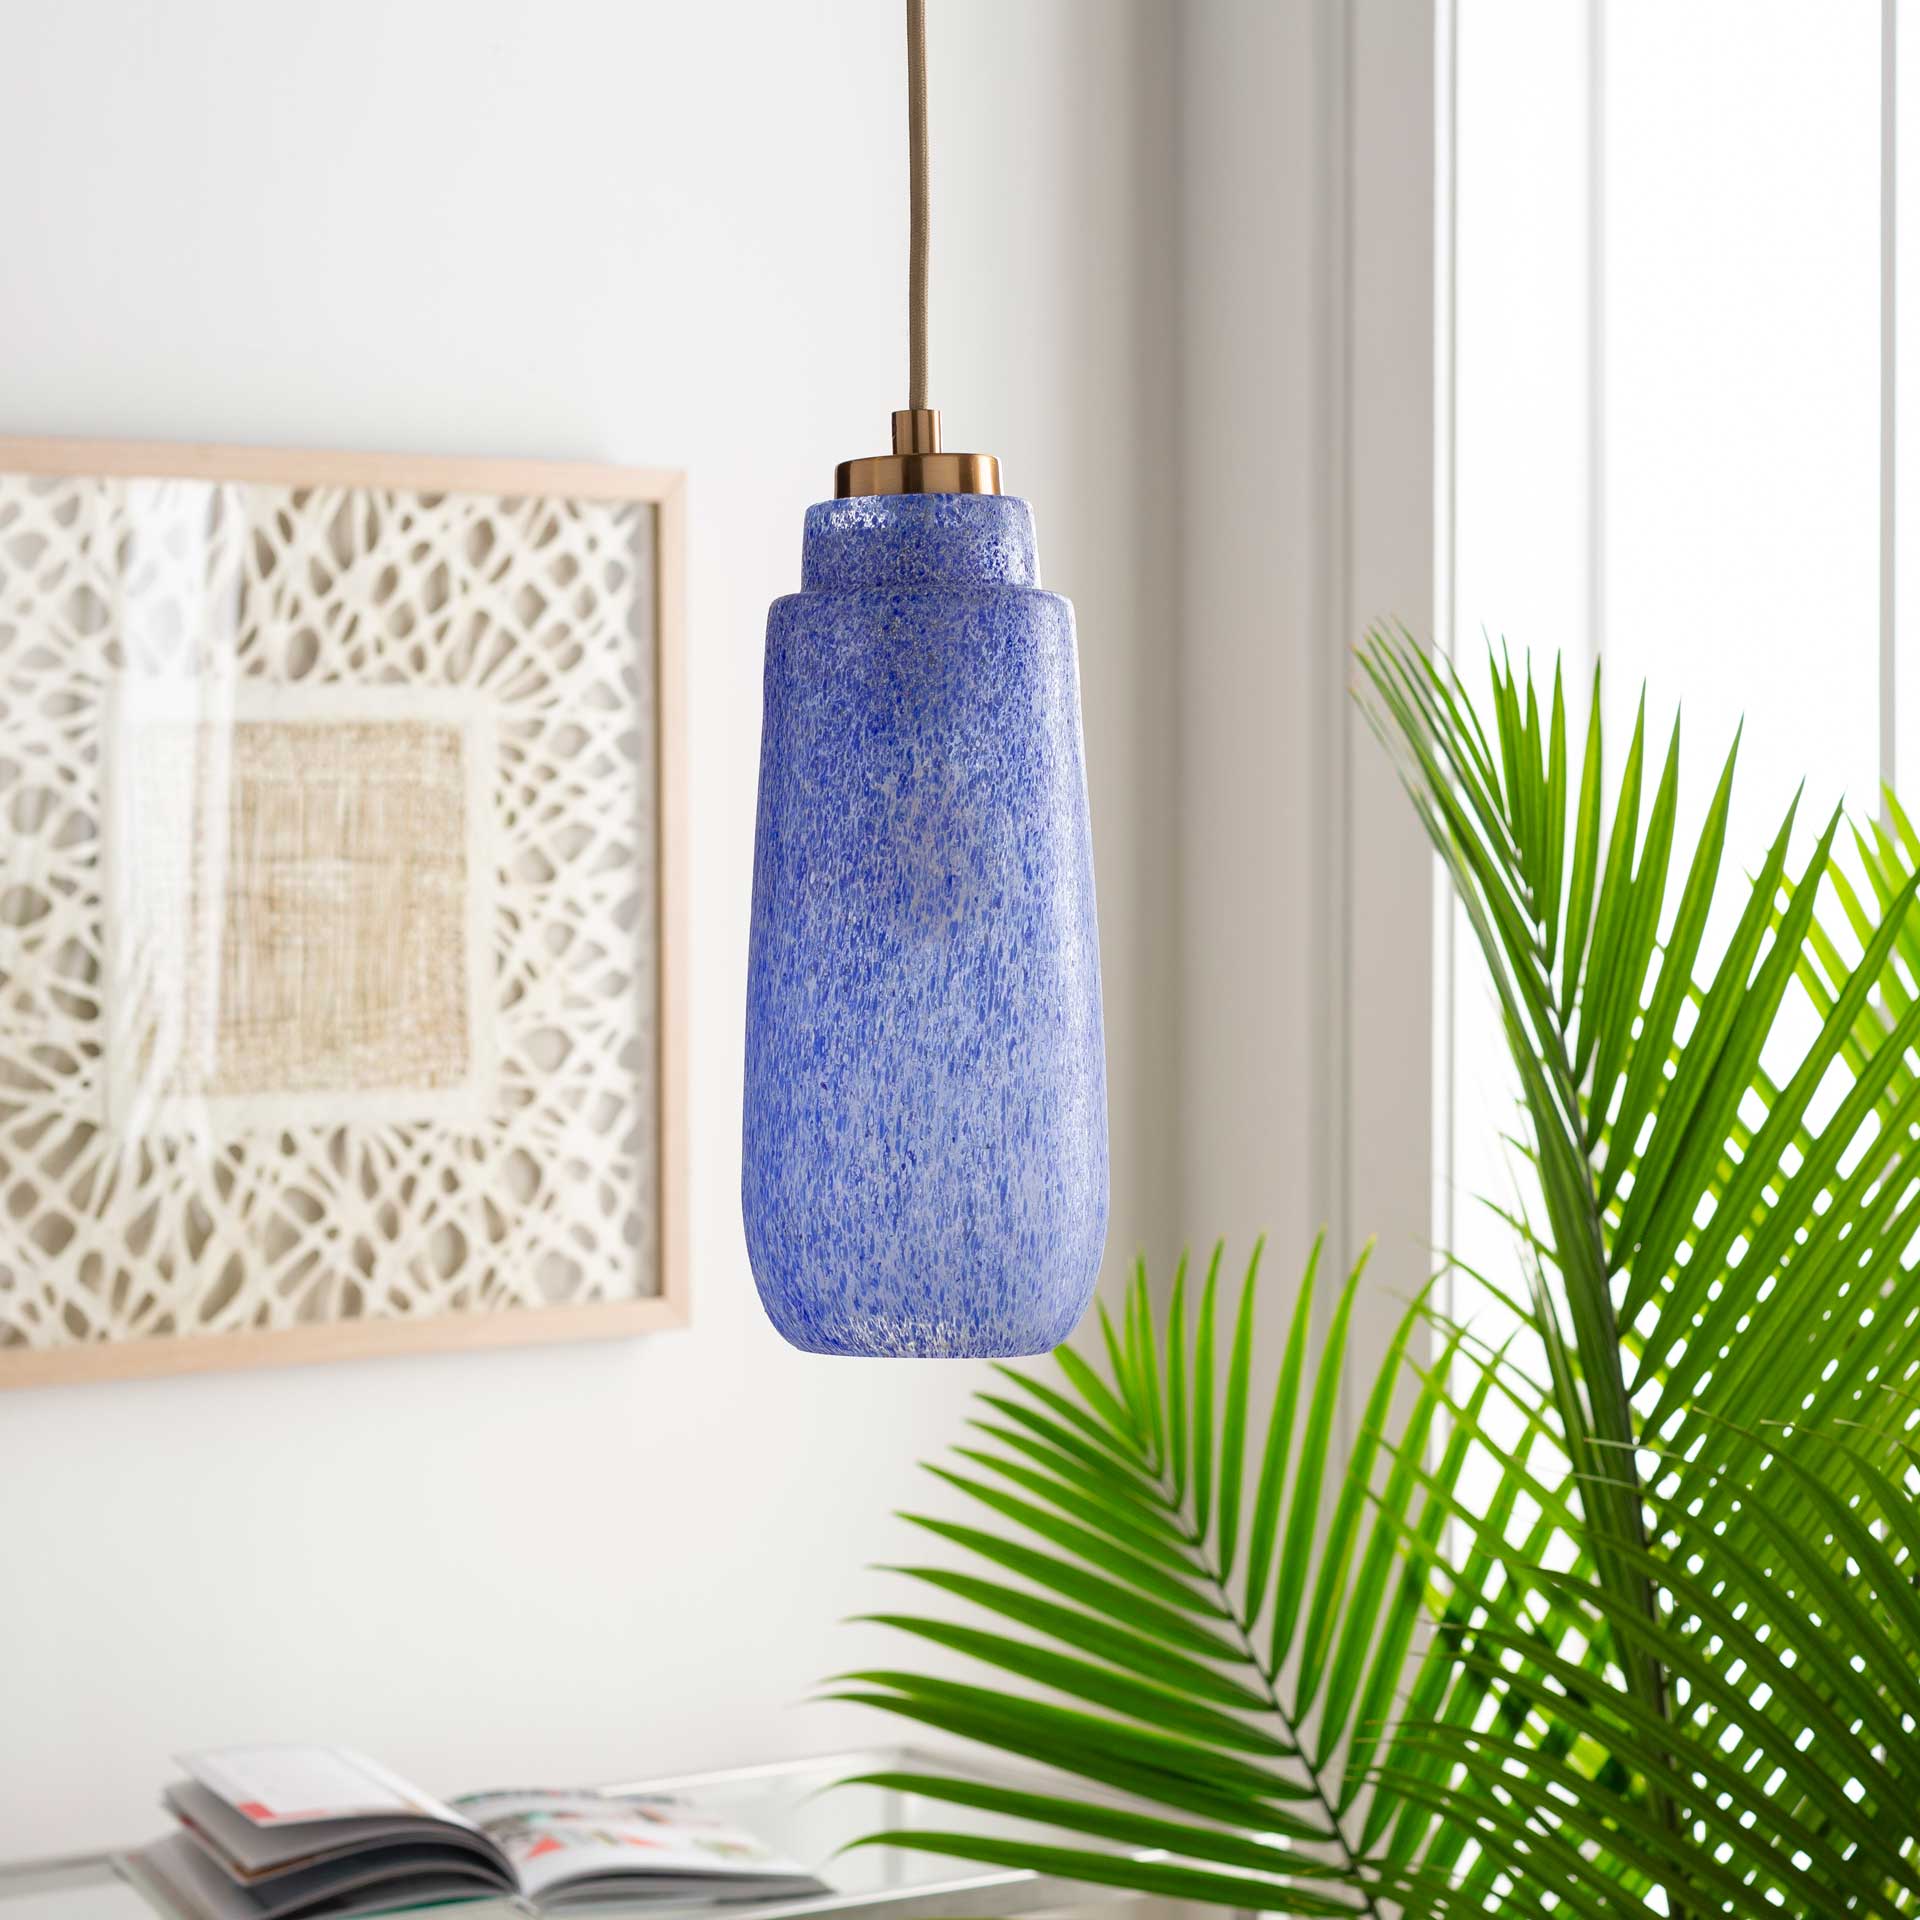 Leilani Ceiling Lamp Violet/Blue/Bronze